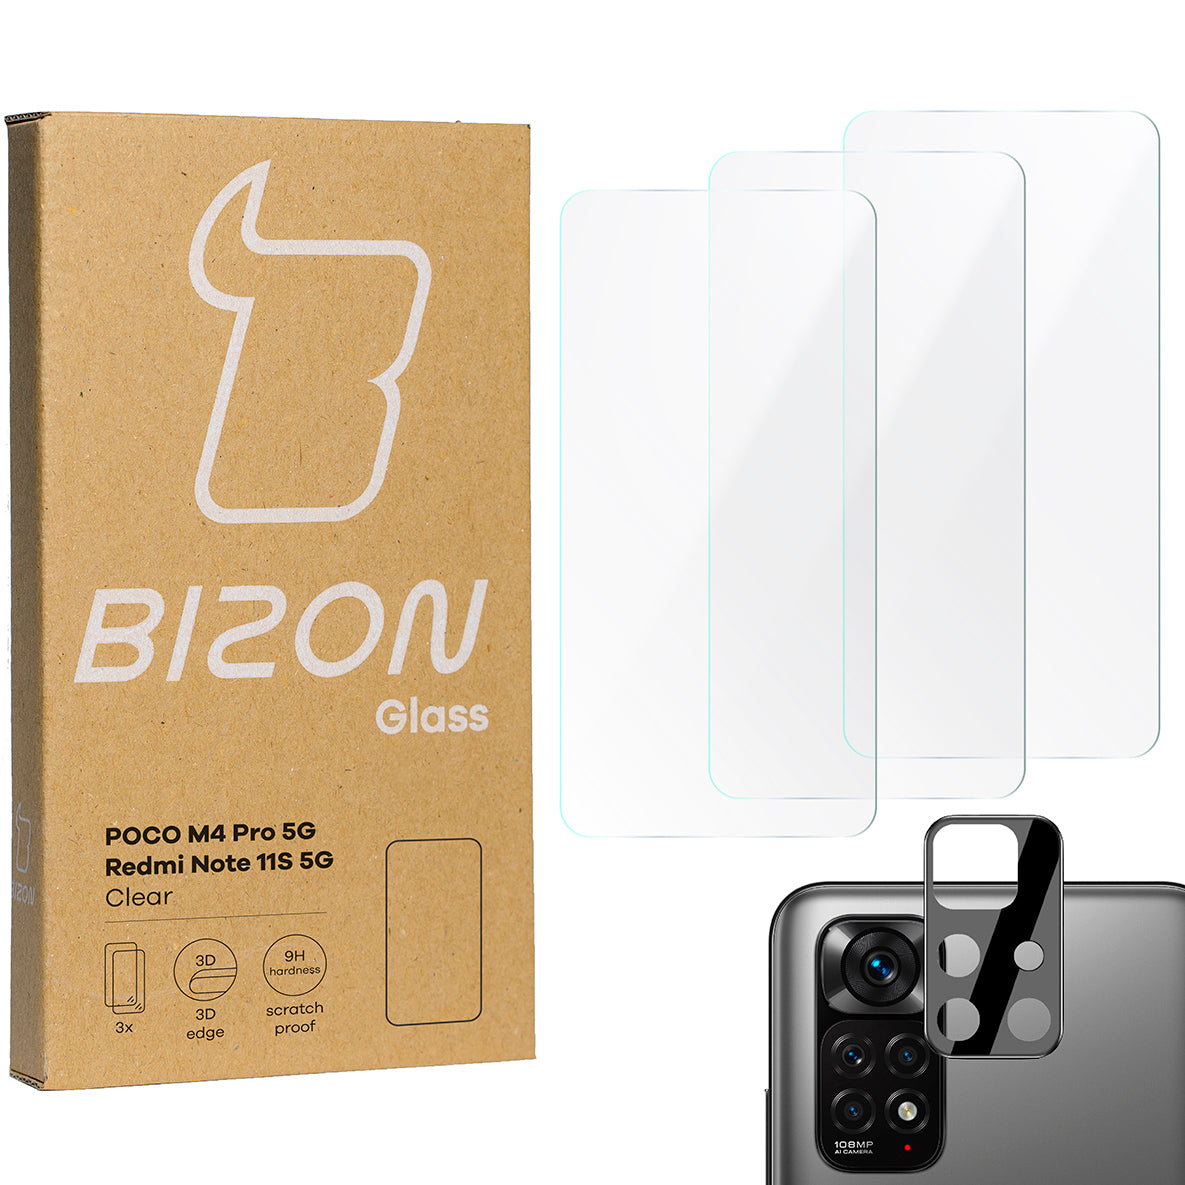 Gehärtetes Glas Bizon Glass Clear - 3 Stück + Kameraschutz für Poco M4 Pro 5G / Redmi Note 11S 5G